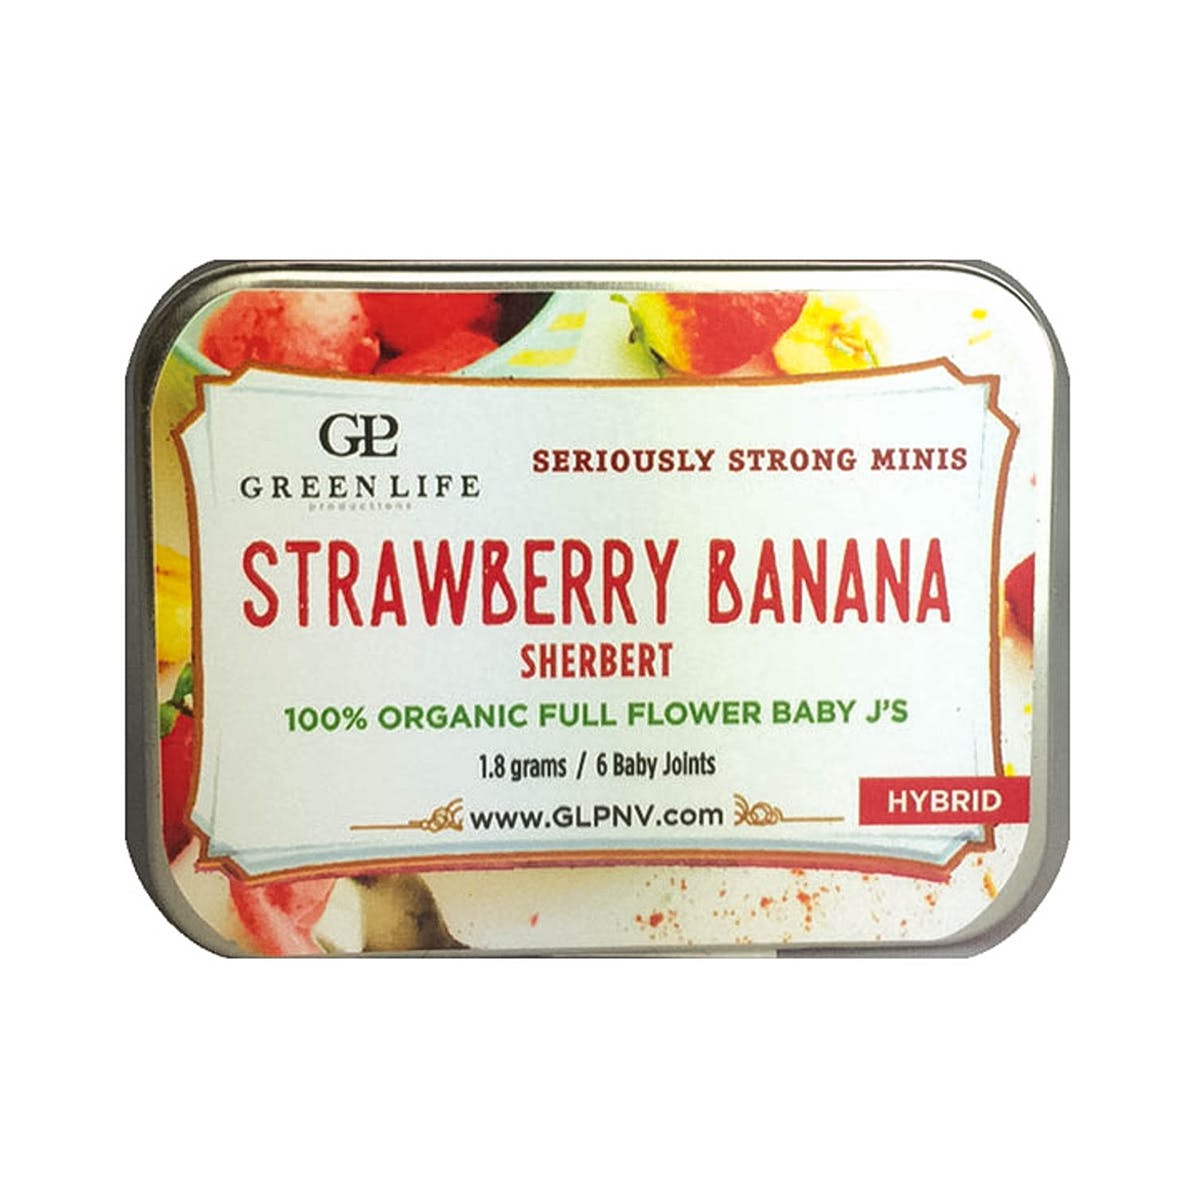 Strawberry Banana Sherbert Baby J's